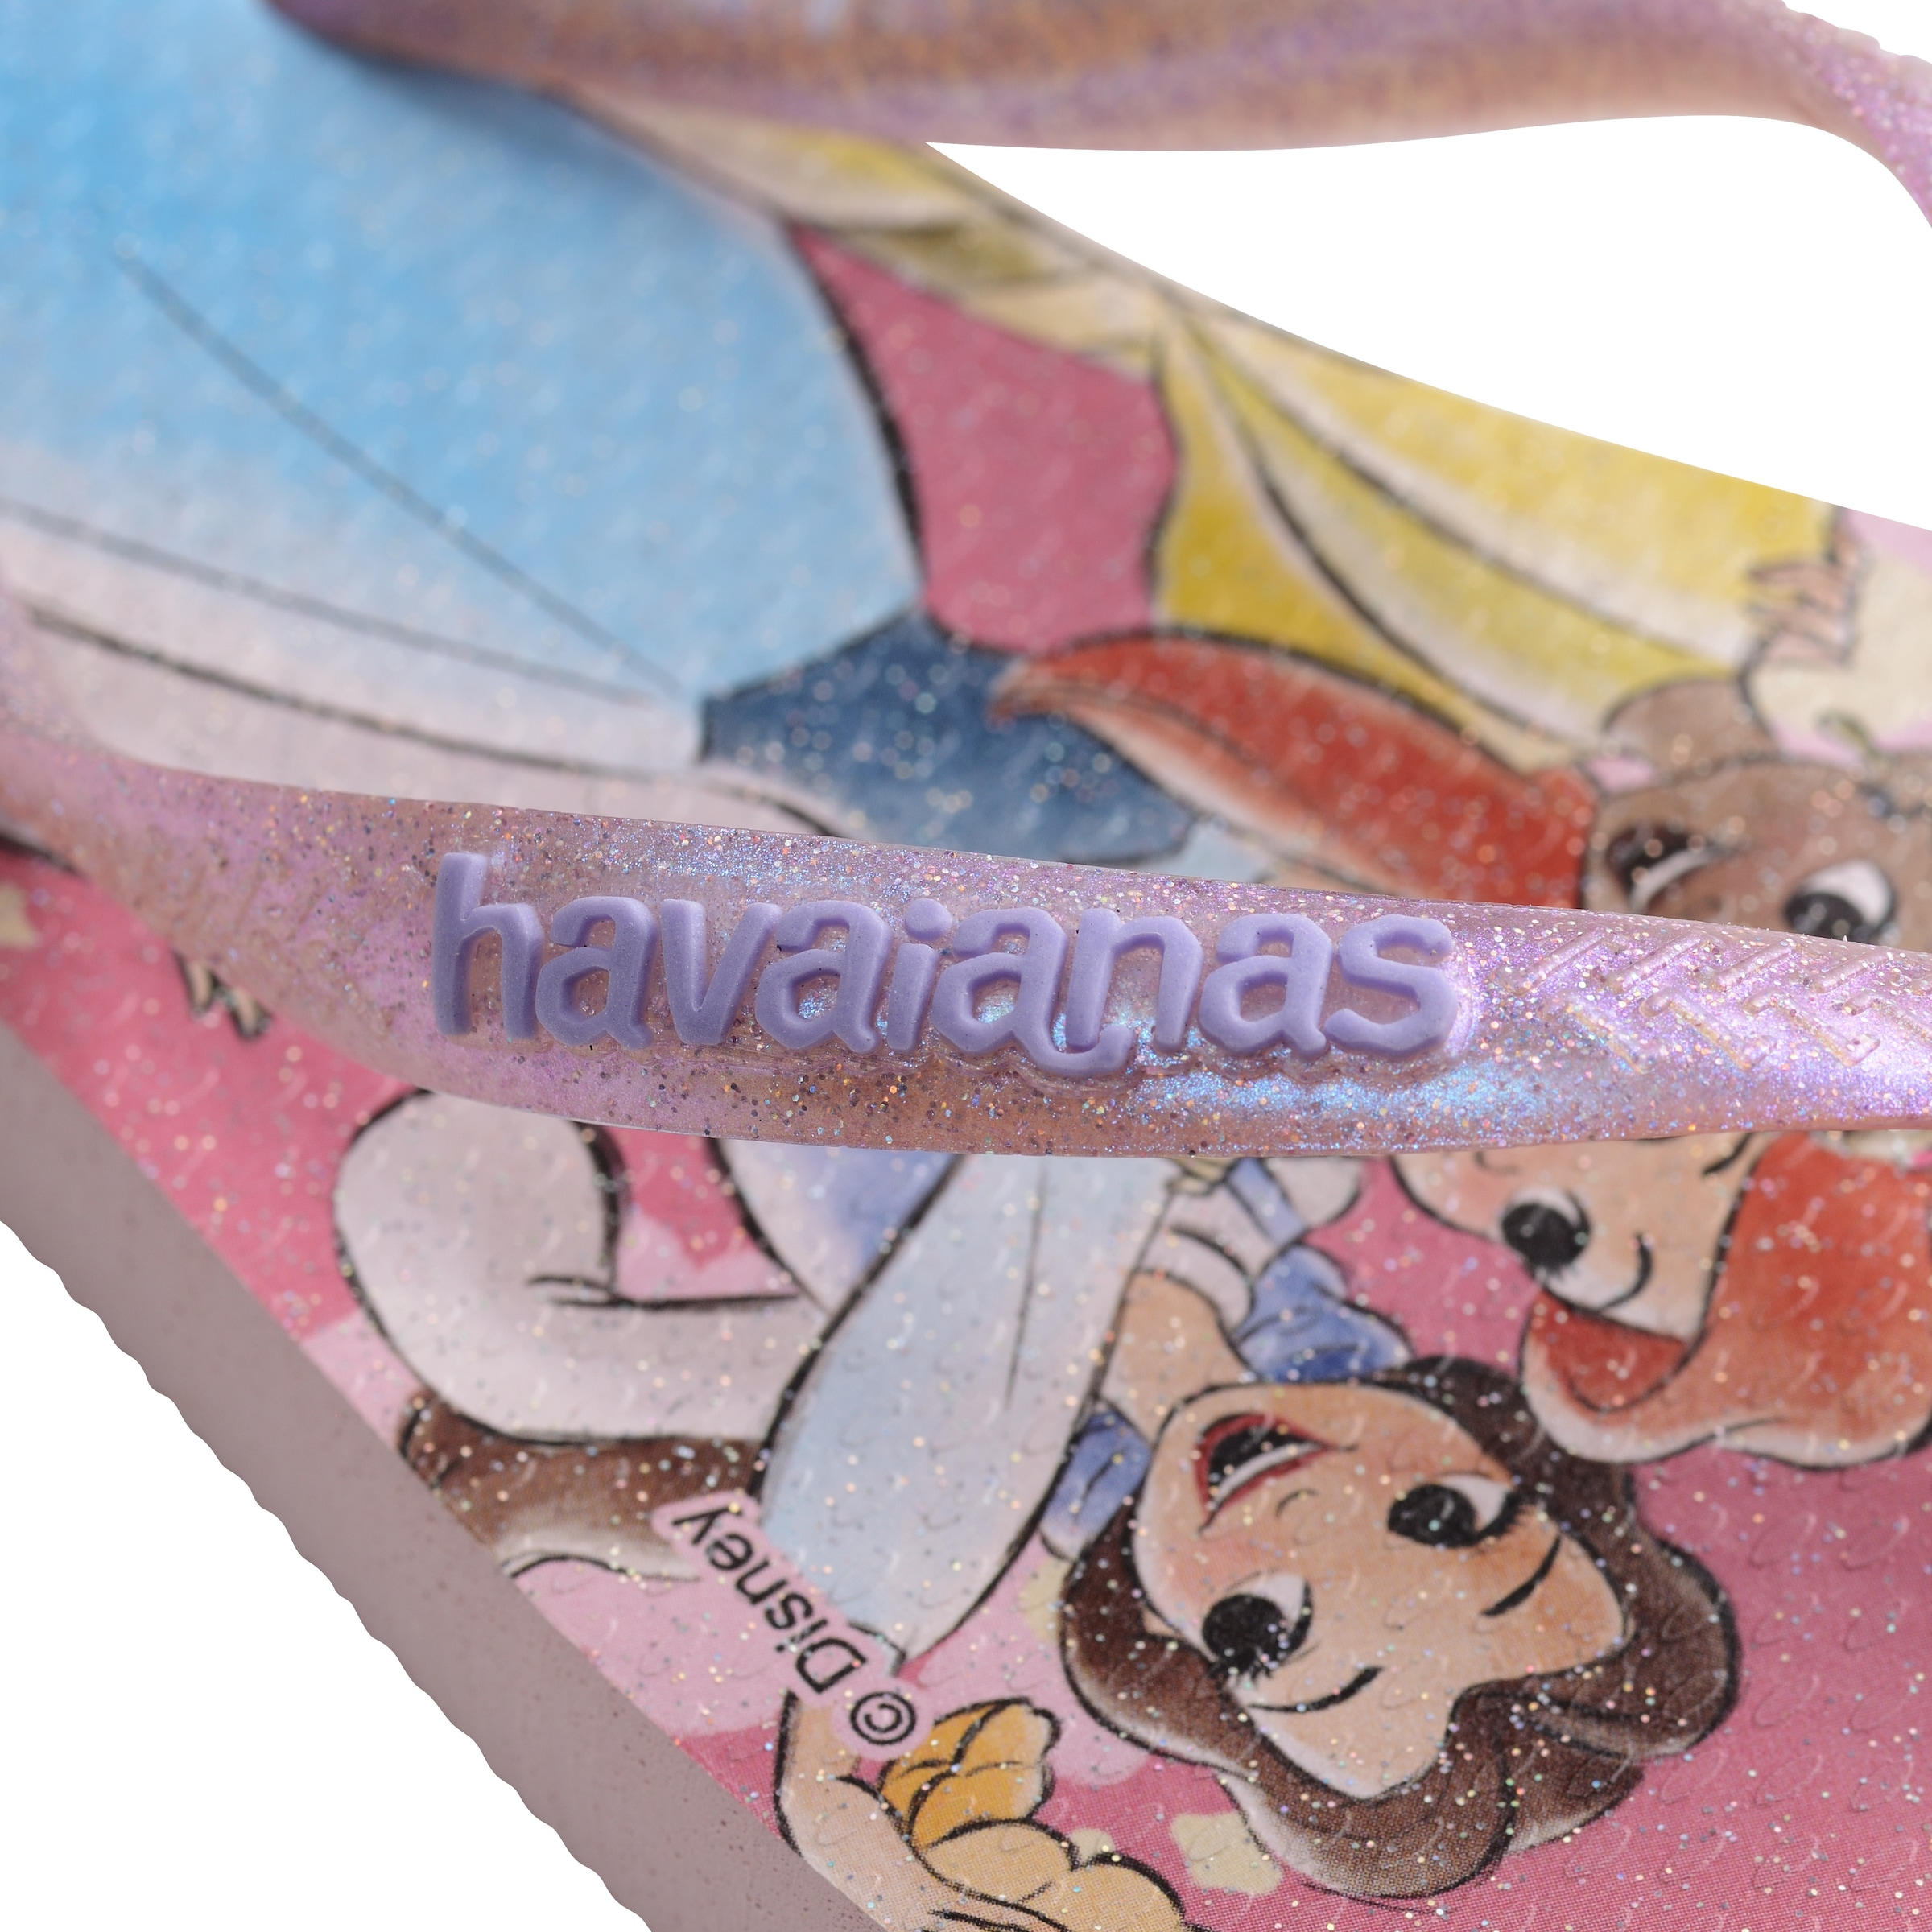 Havaianas Zehentrenner »KIDS SLIM PRINCESS«, Sommerschuhe, Poolslides, Urlaub, mit süßem Prinzessinnendesign